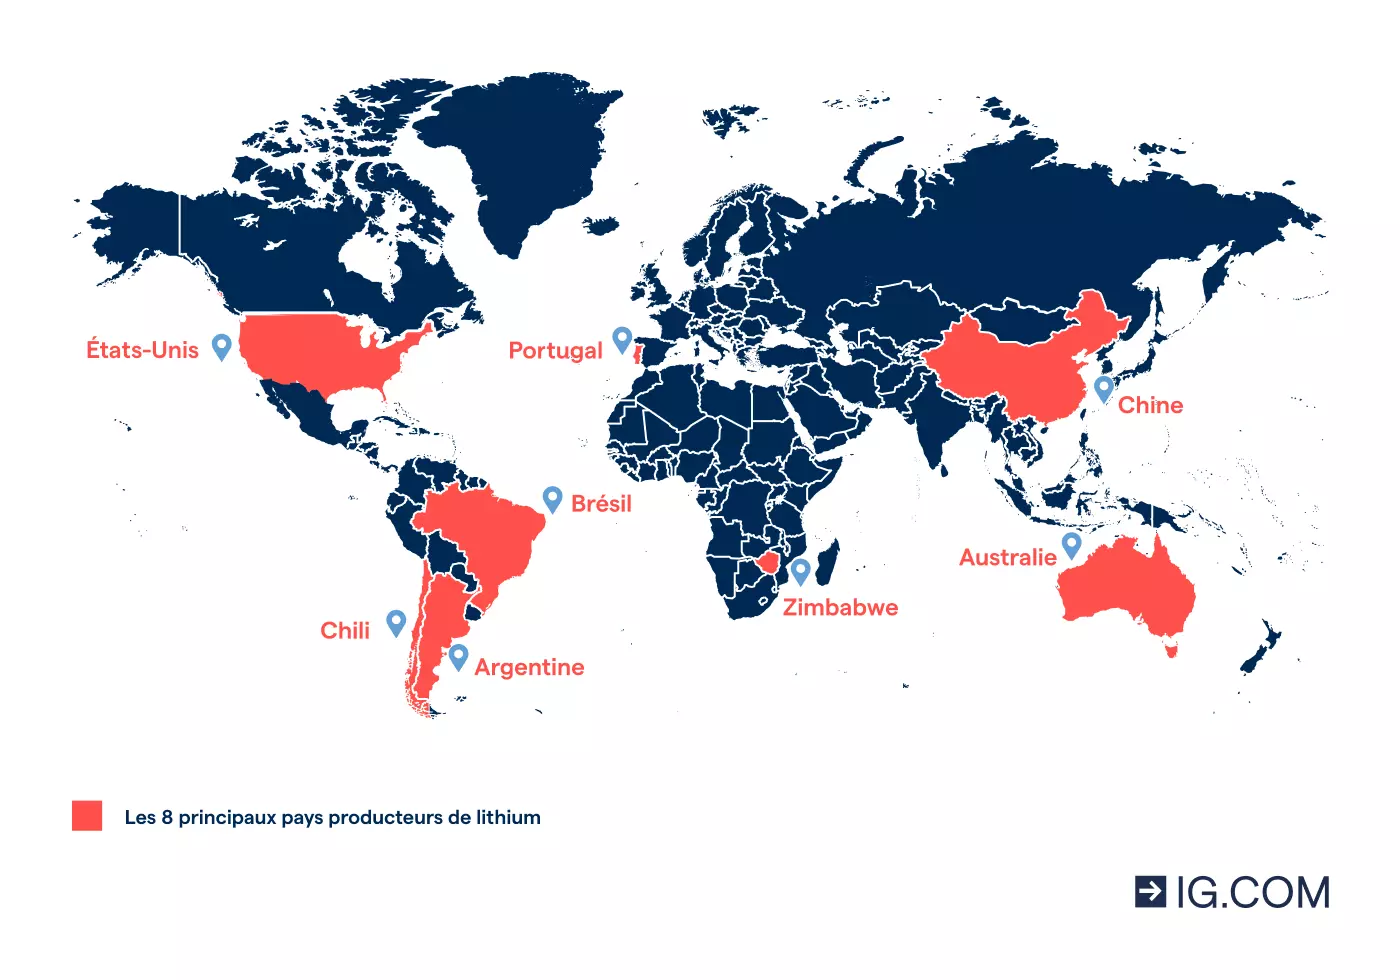 Image de la carte du monde mettant en évidence les 8 principaux producteurs de lithium dans le monde